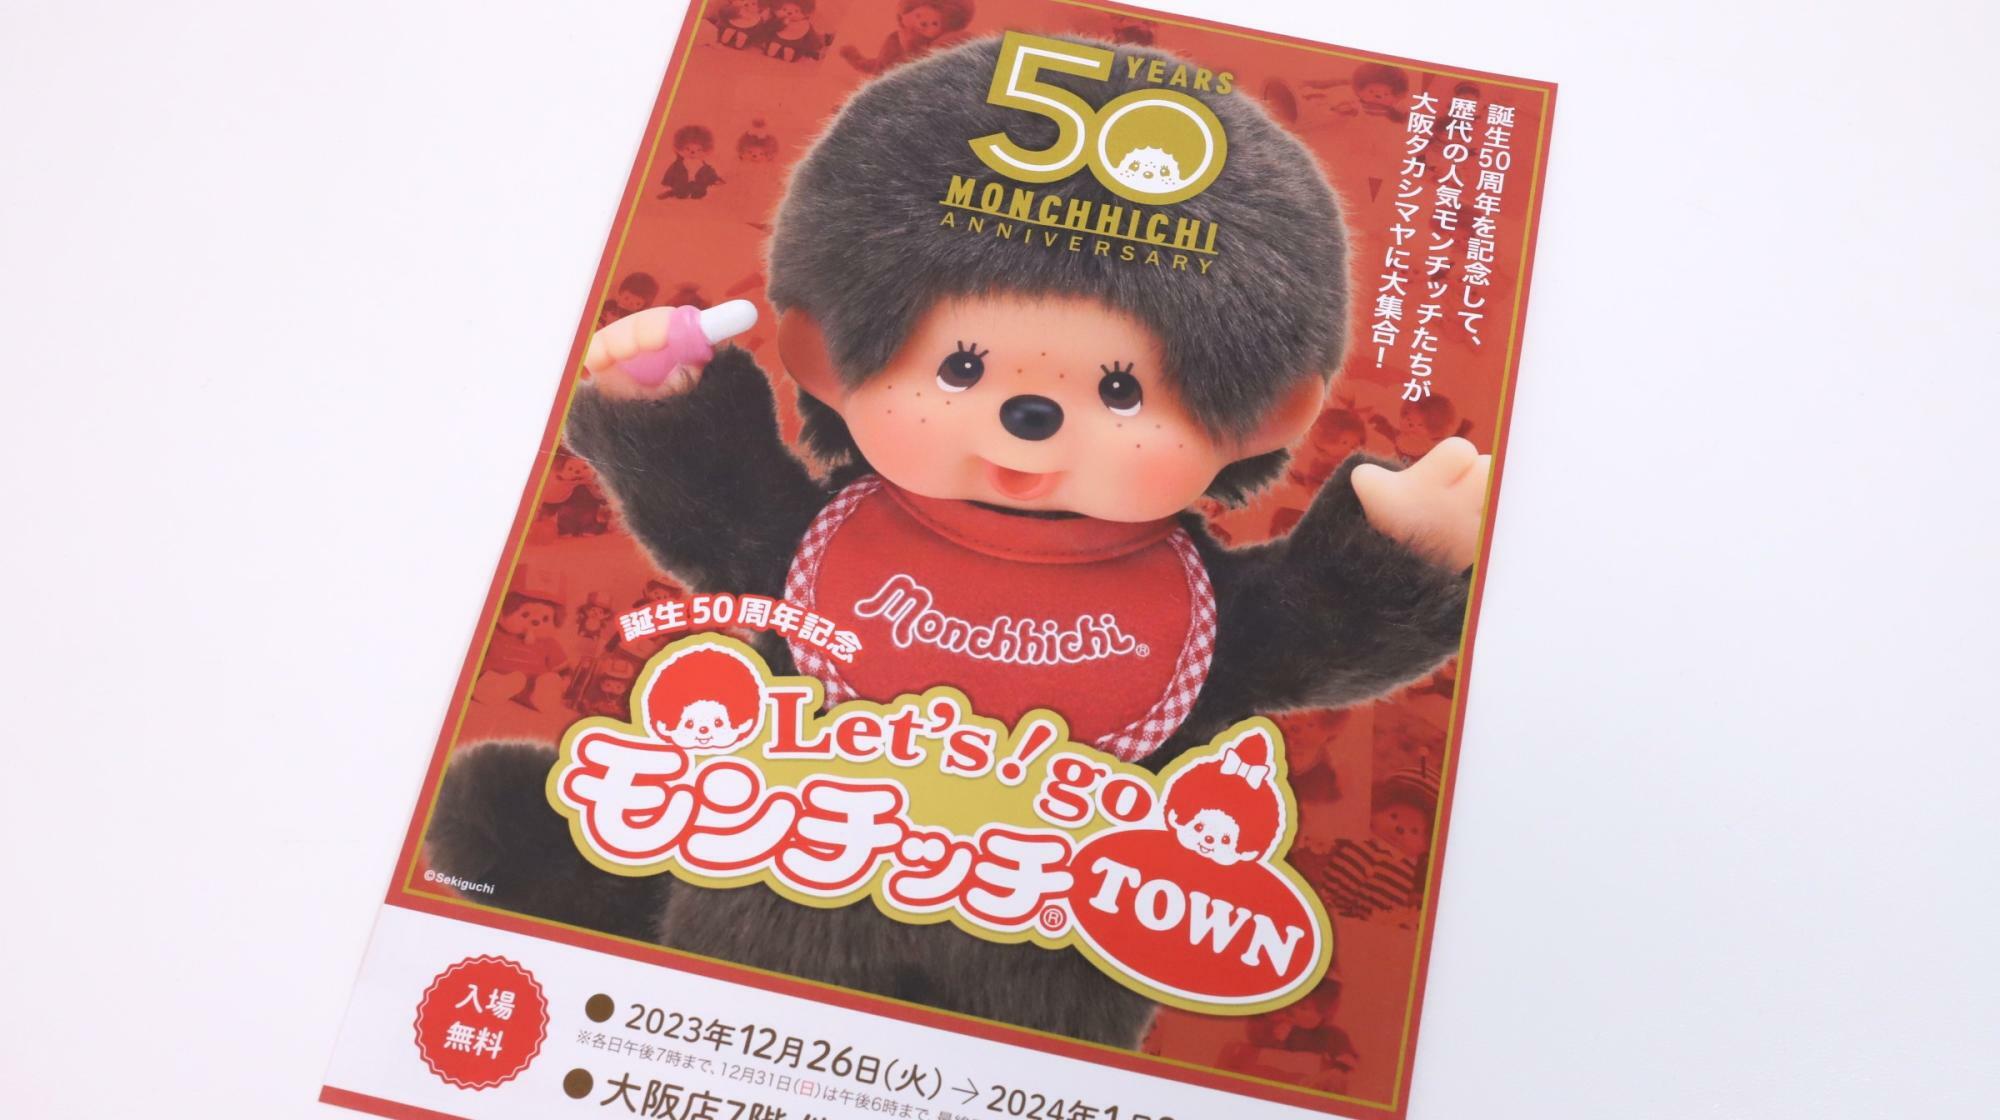 高島屋大阪店のモンチッチ誕生50周年イベント「Let's!go モンチッチTOWN」のチラシ